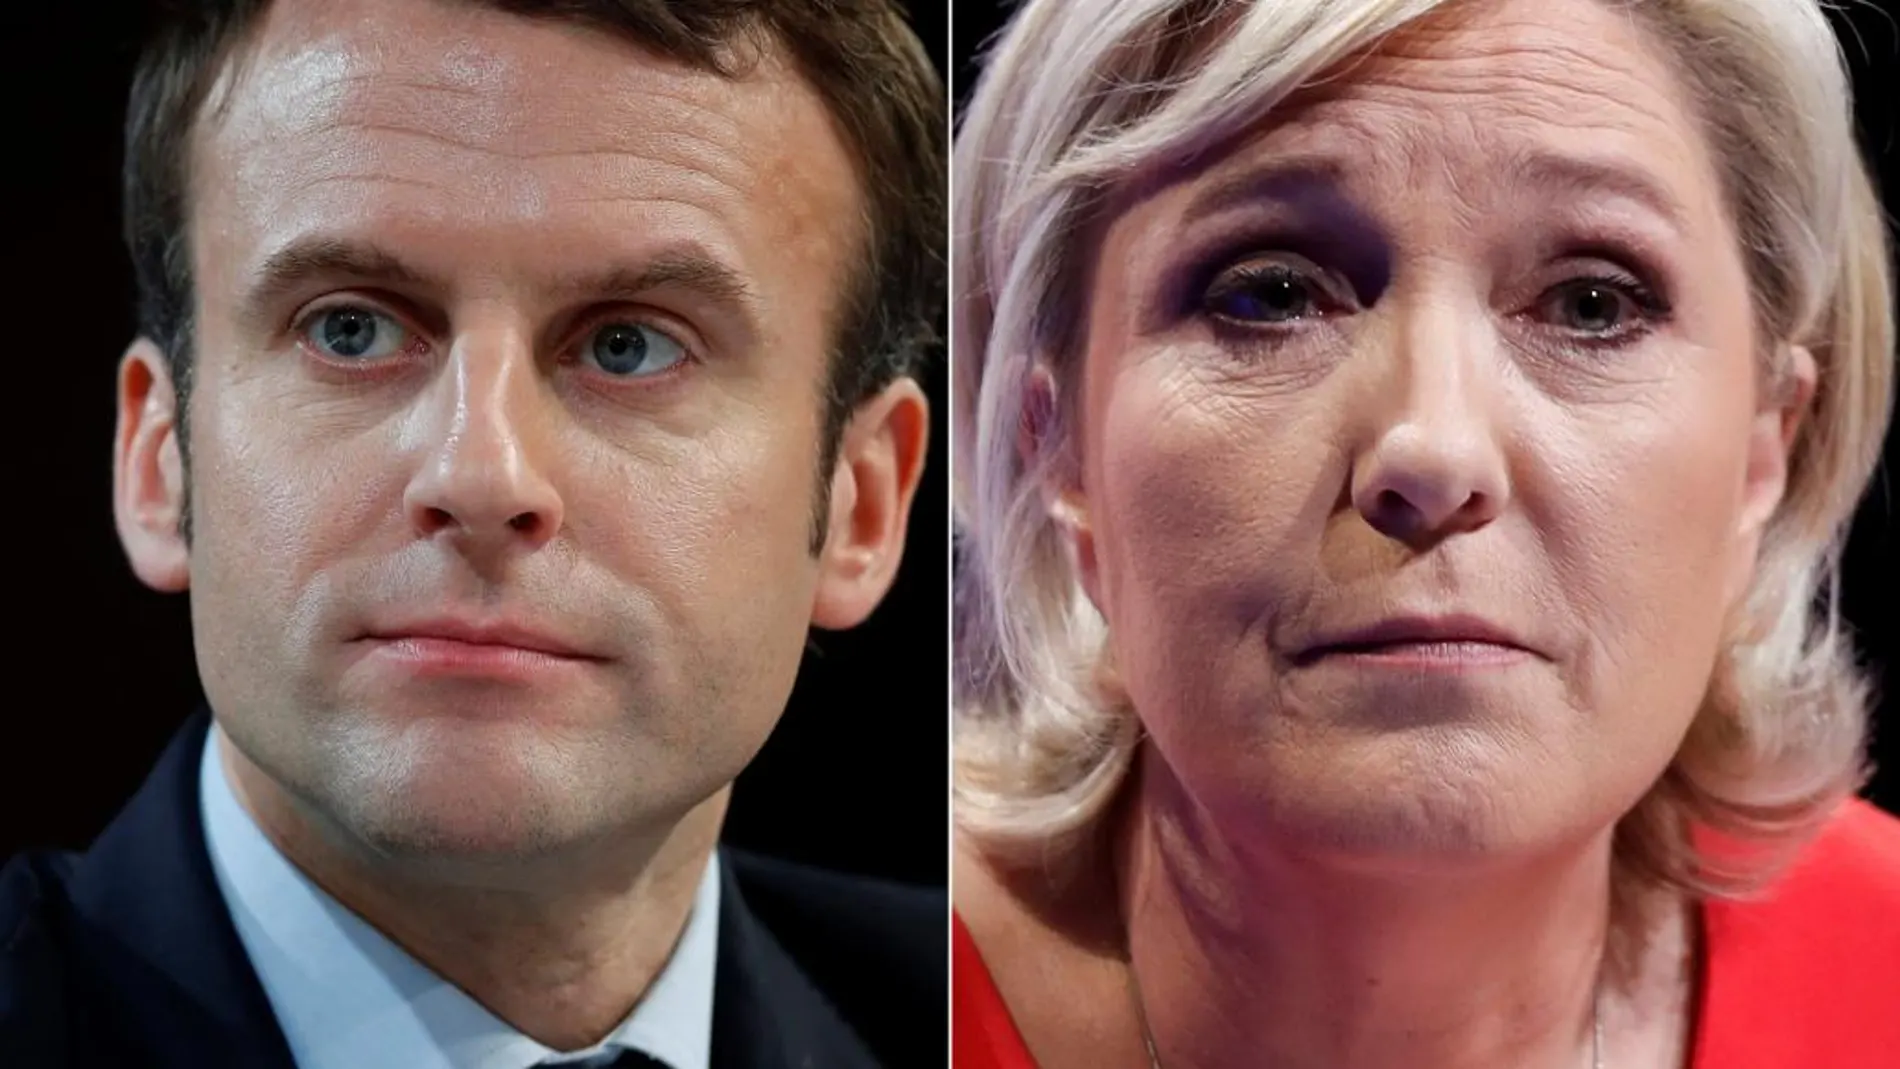 Emmanuel Macron y Marine Le Pen se disputarán la presidencia de Francia